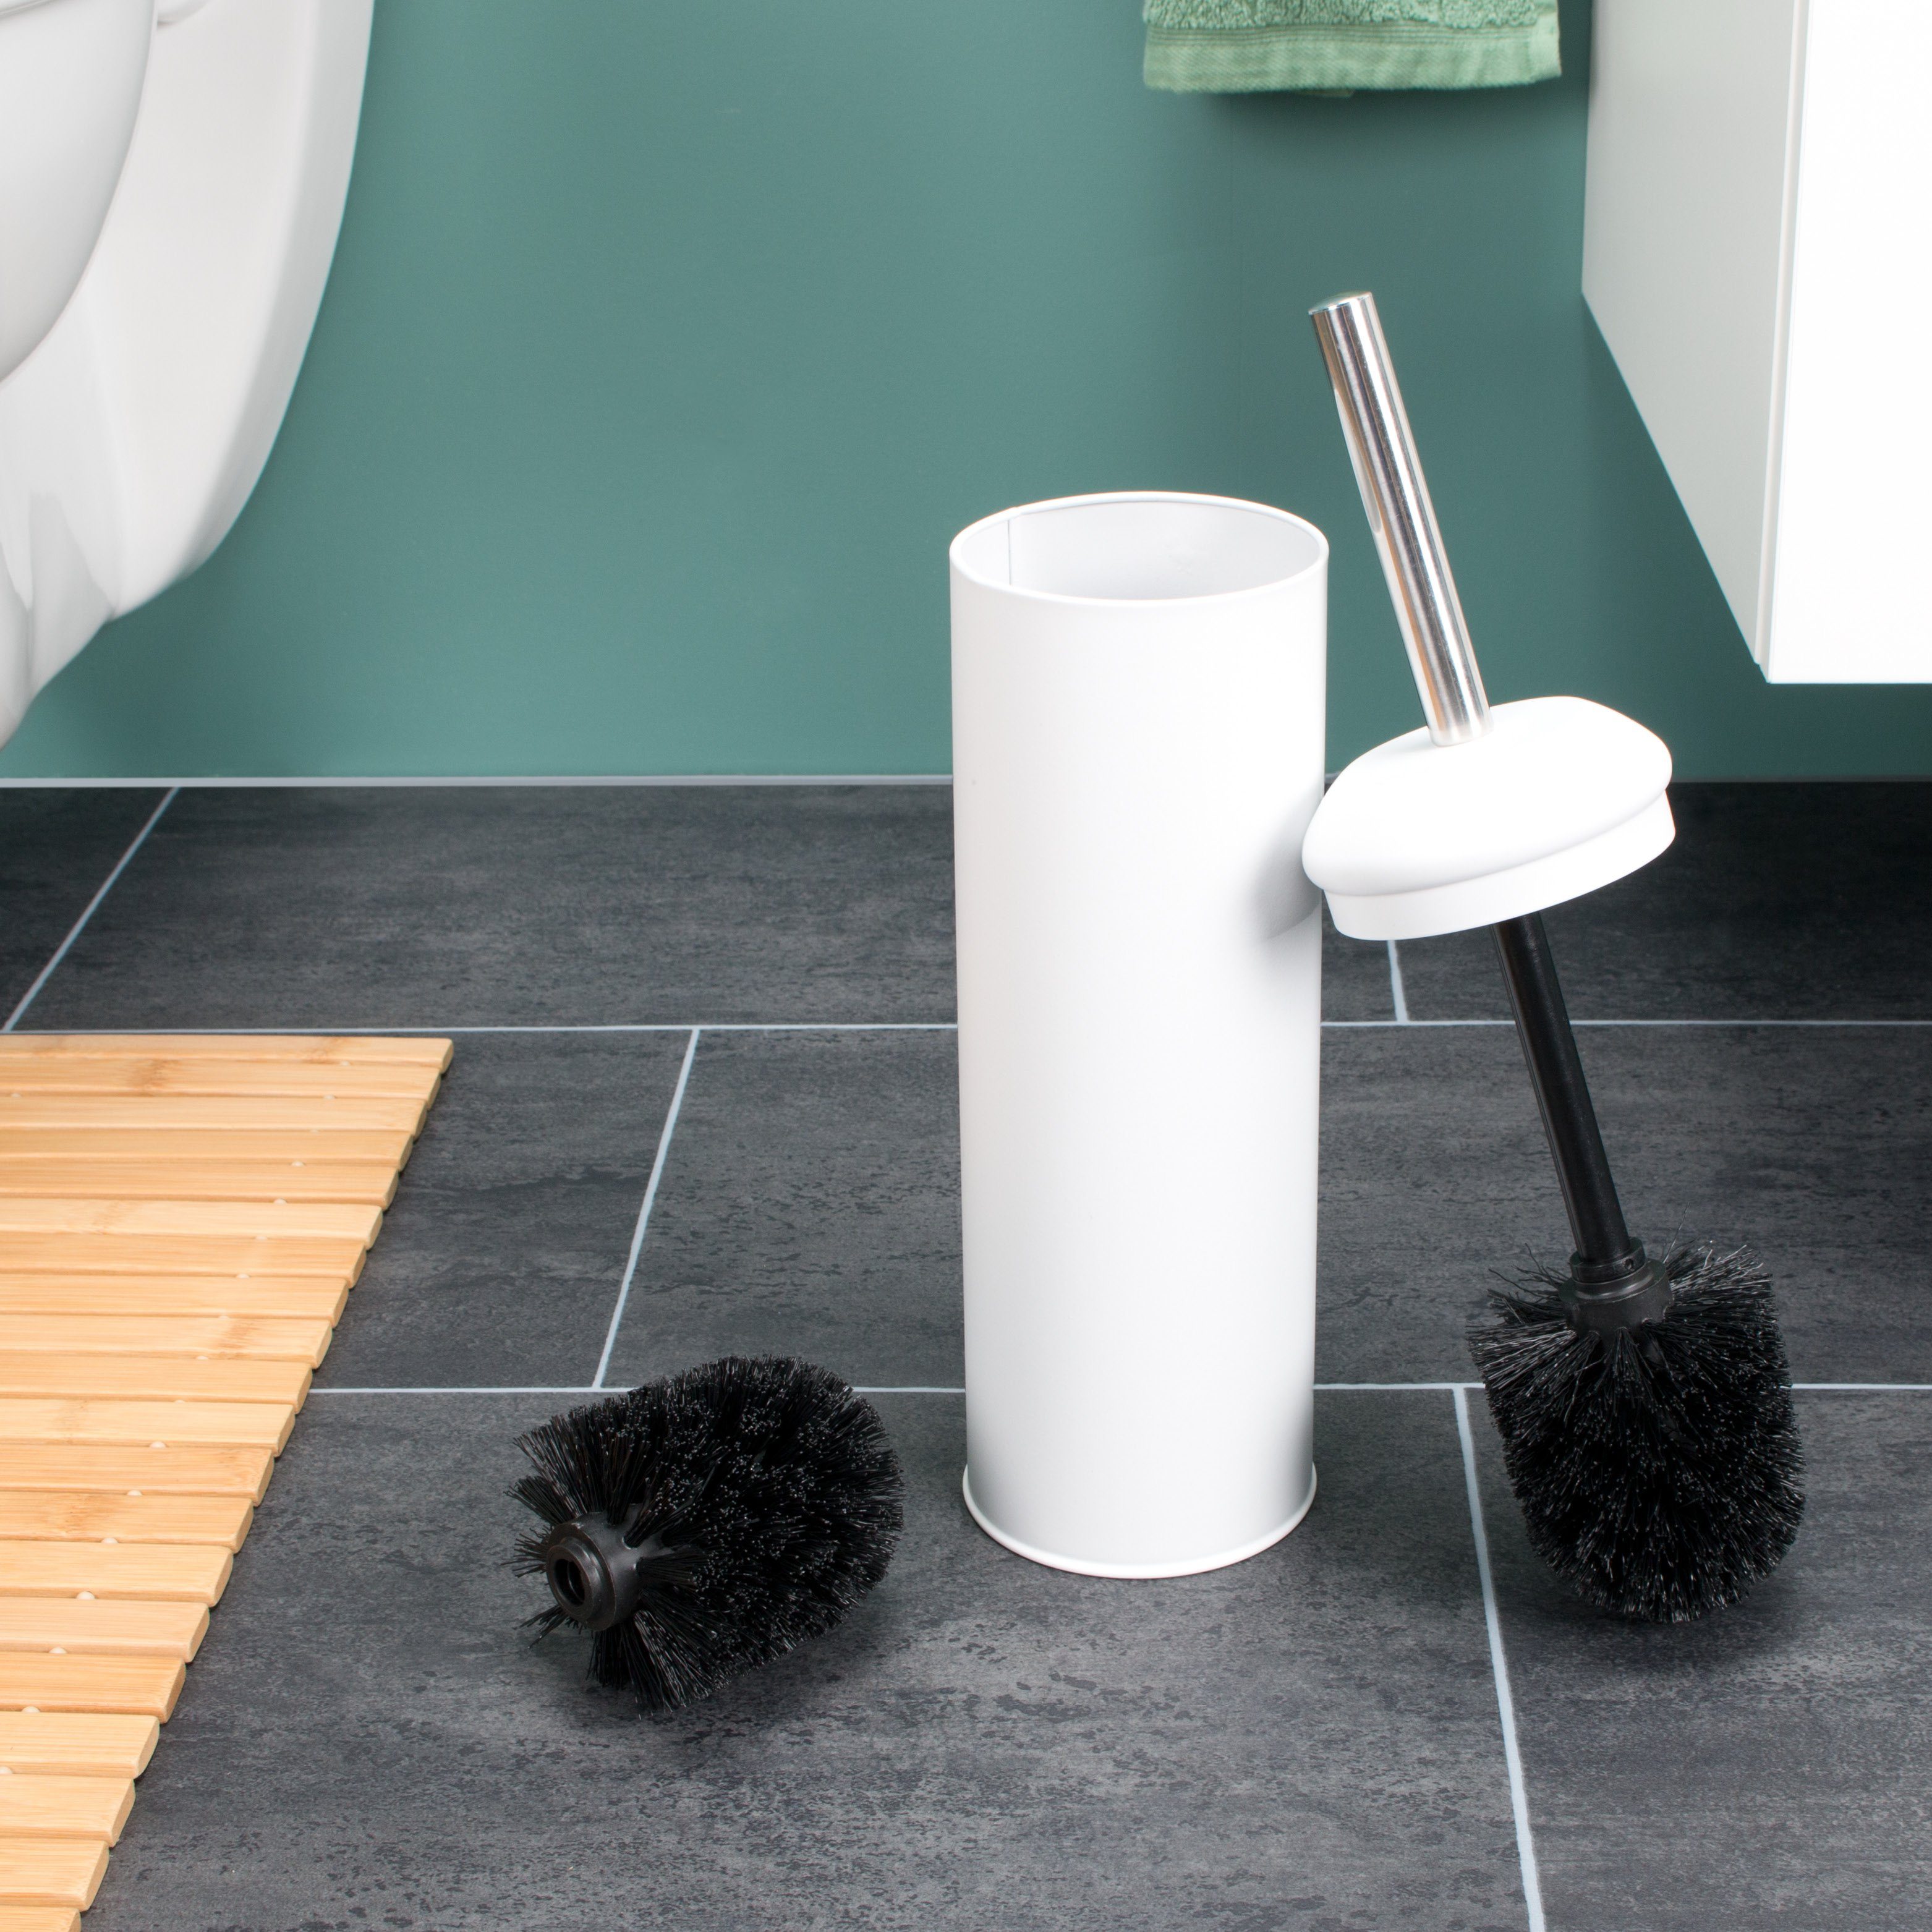 bremermann WC-Reinigungsbürste RIALTO Edelstahl Set) Metall Bürste RIALTO, weiß, Standbürste Badserie WC (kein